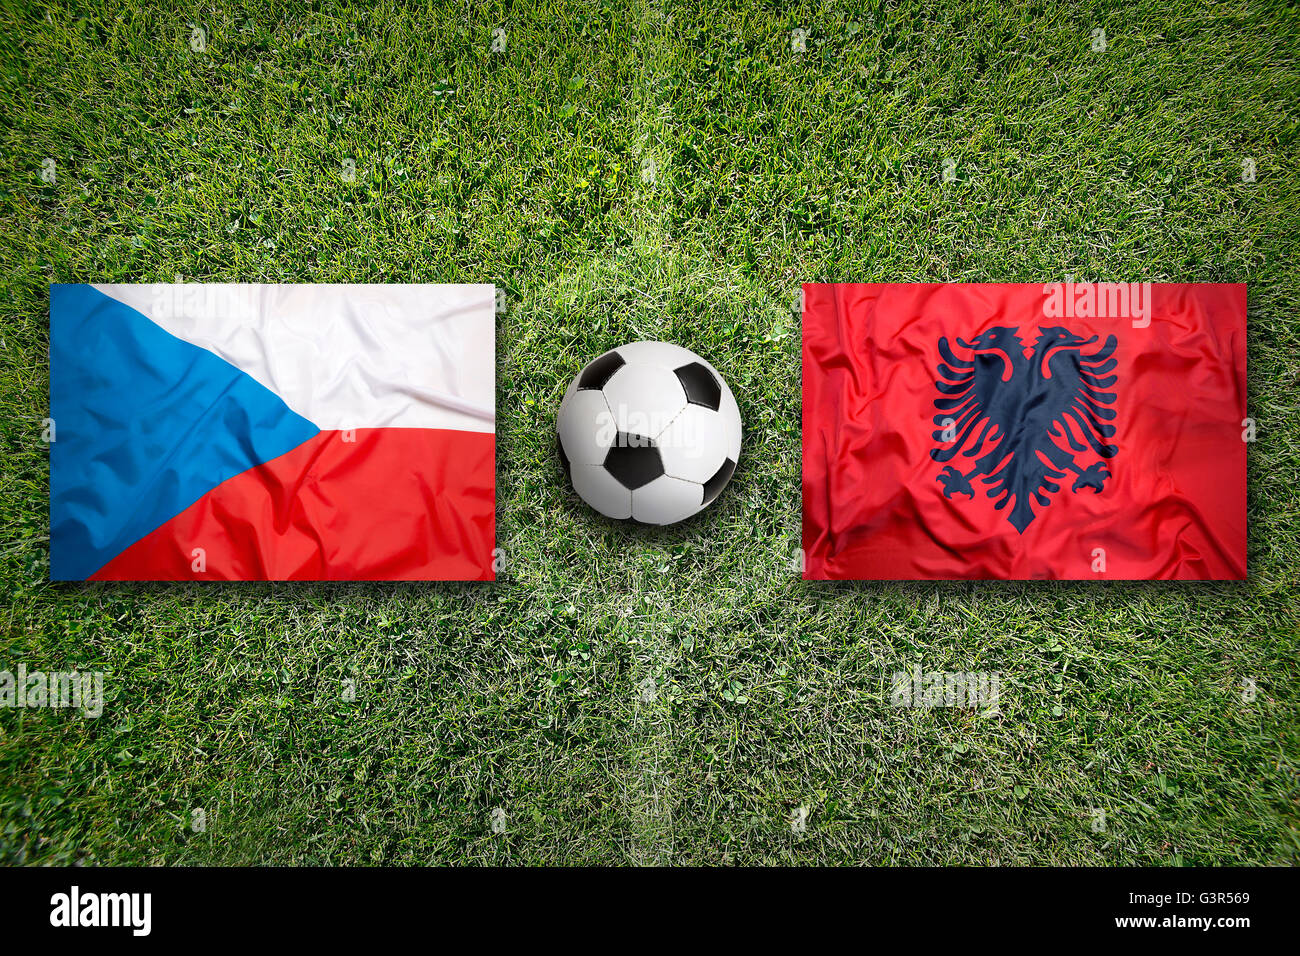 Republica checa vs albania